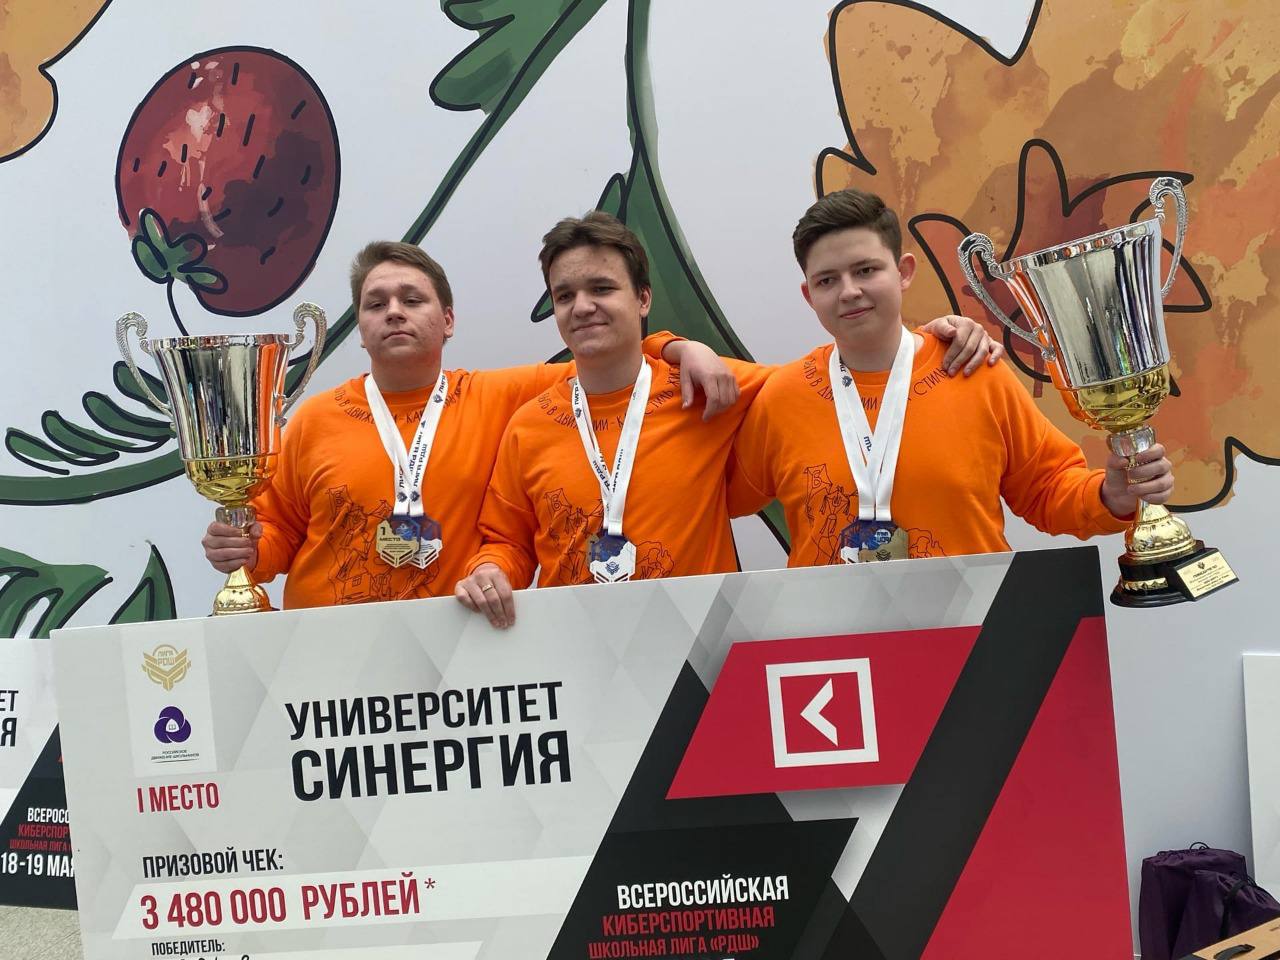 Кузбасские школьники стали победителями Всероссийской киберспортивной лиги Российского движения школьников